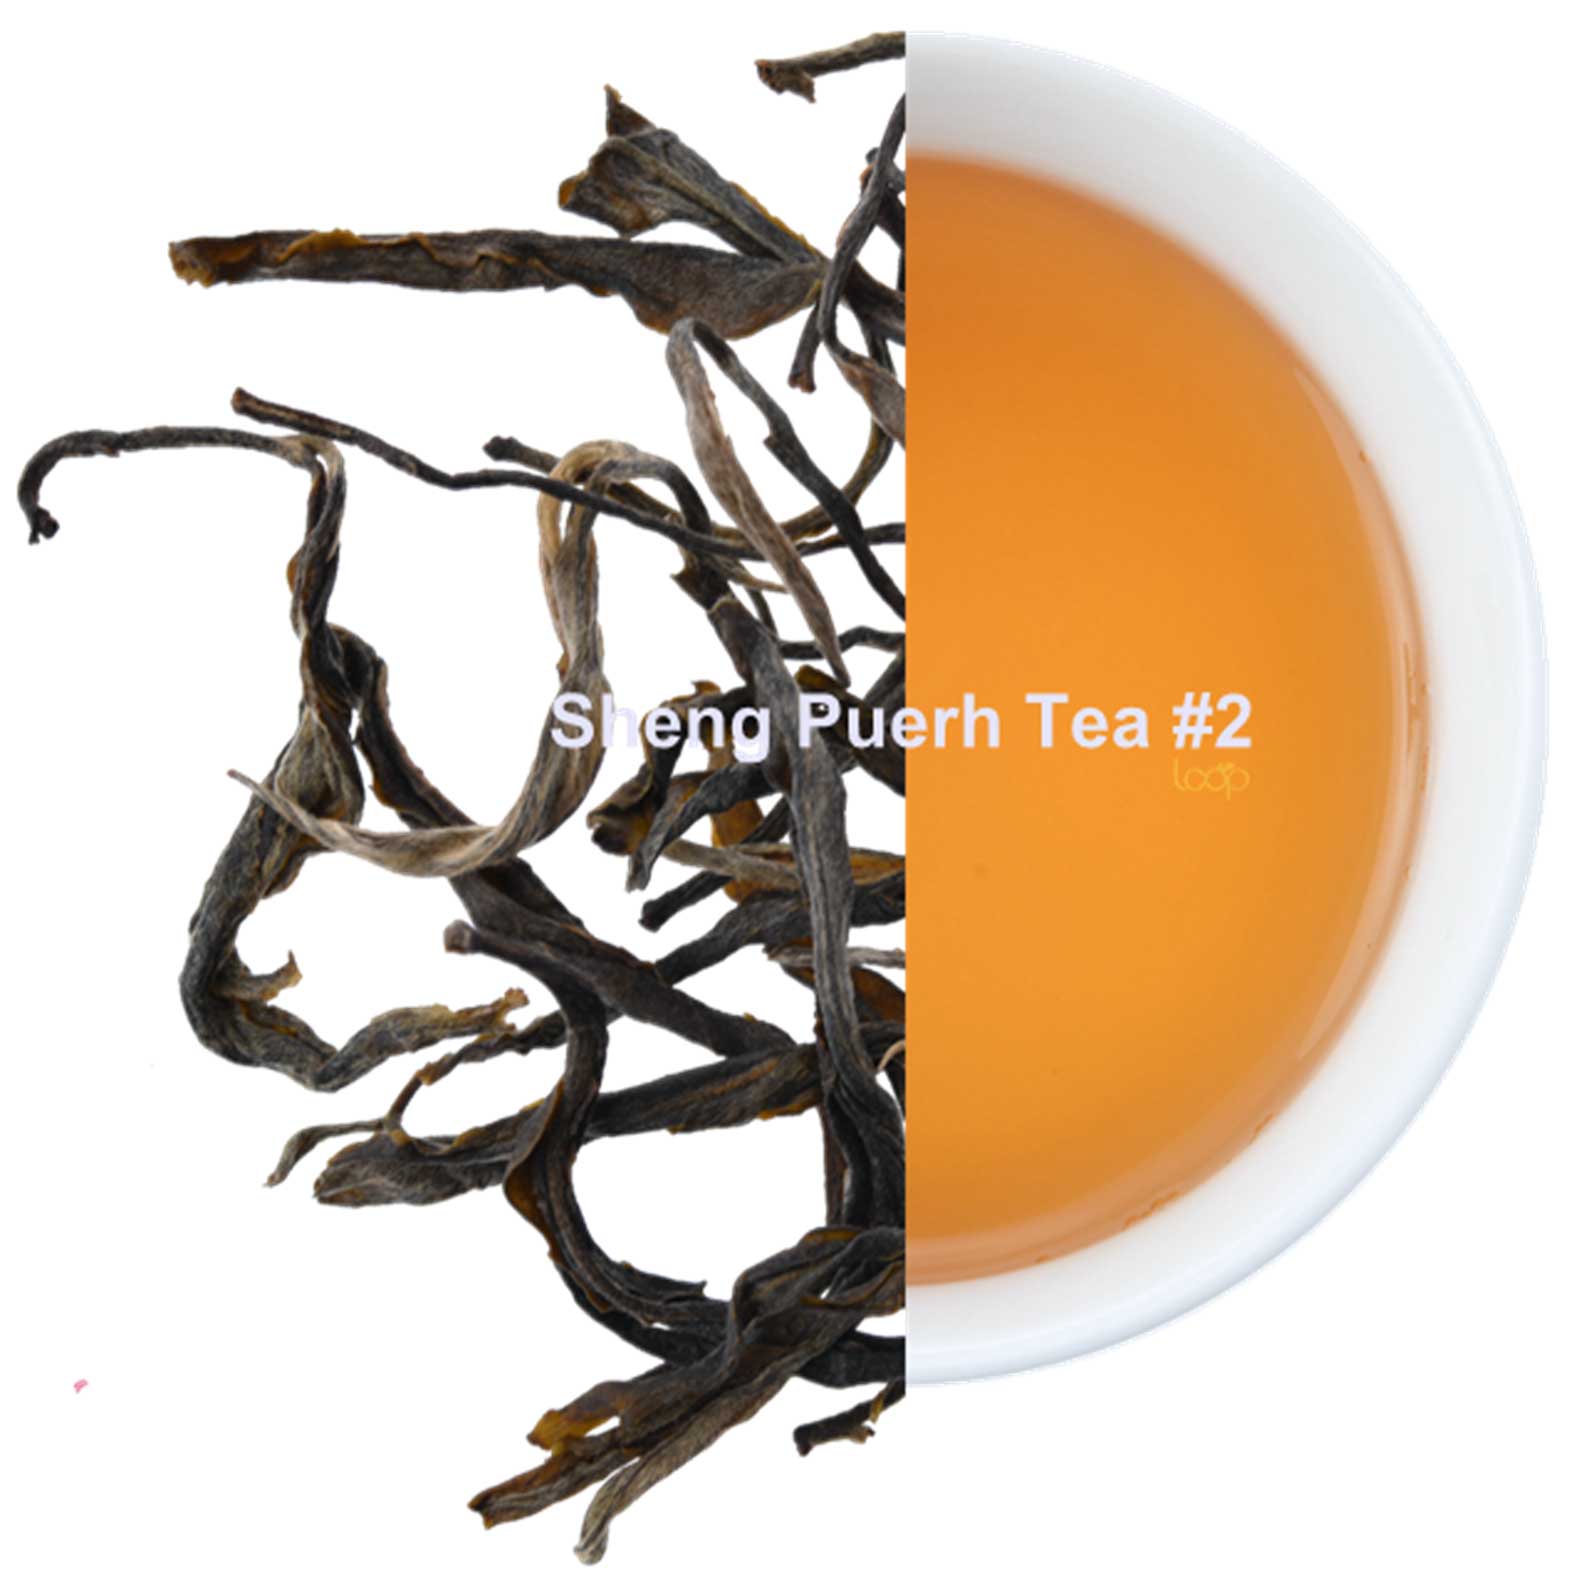 Sheng-(Raw)-Puerh-Tea-#2-4